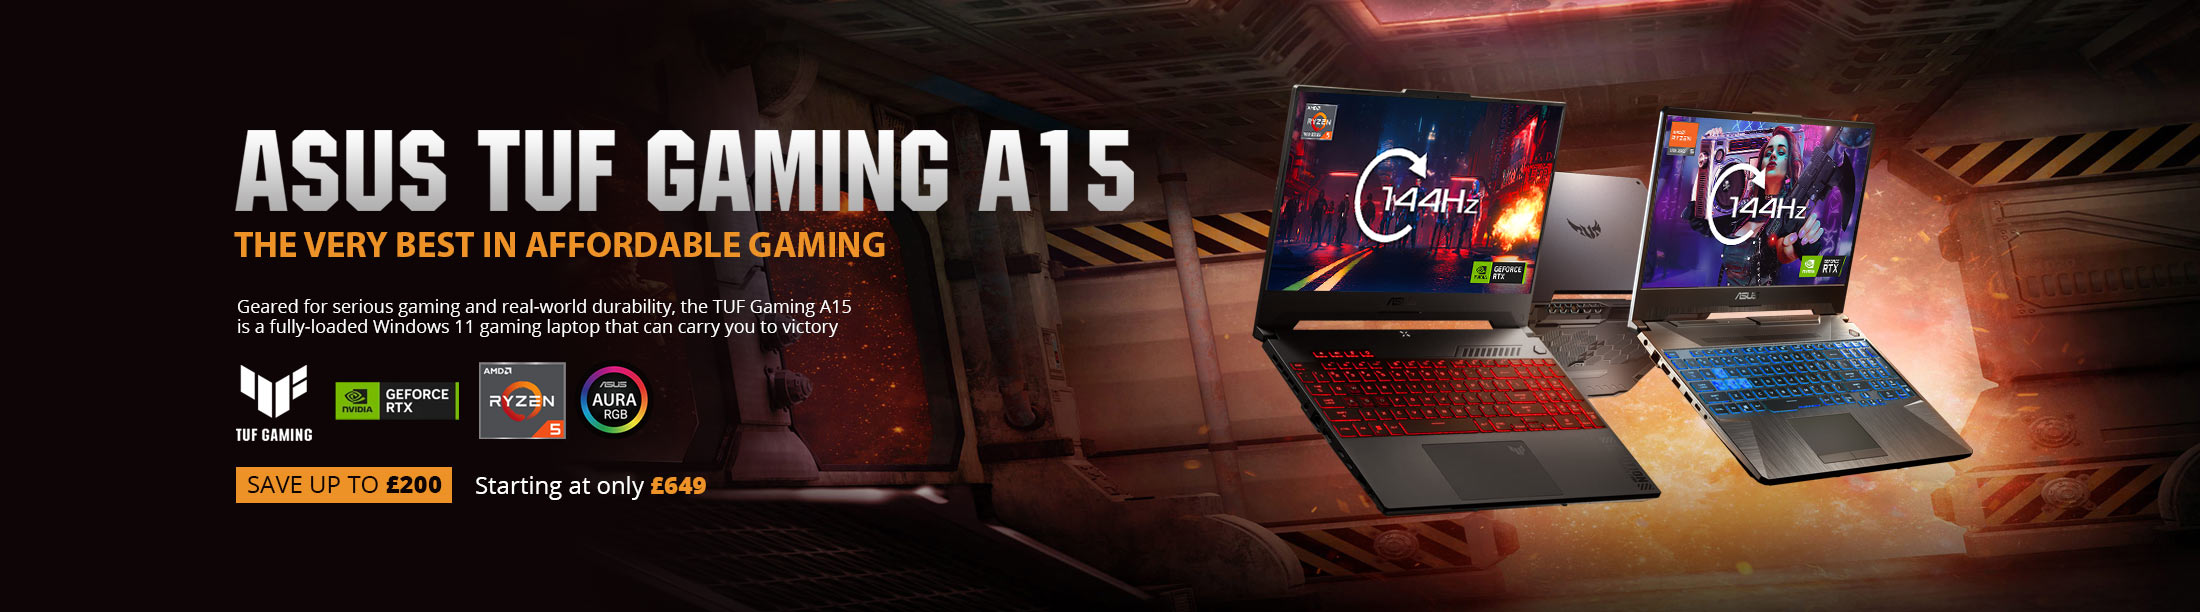 MESH ASUS TUF A15 Gaming Laptop Deals.